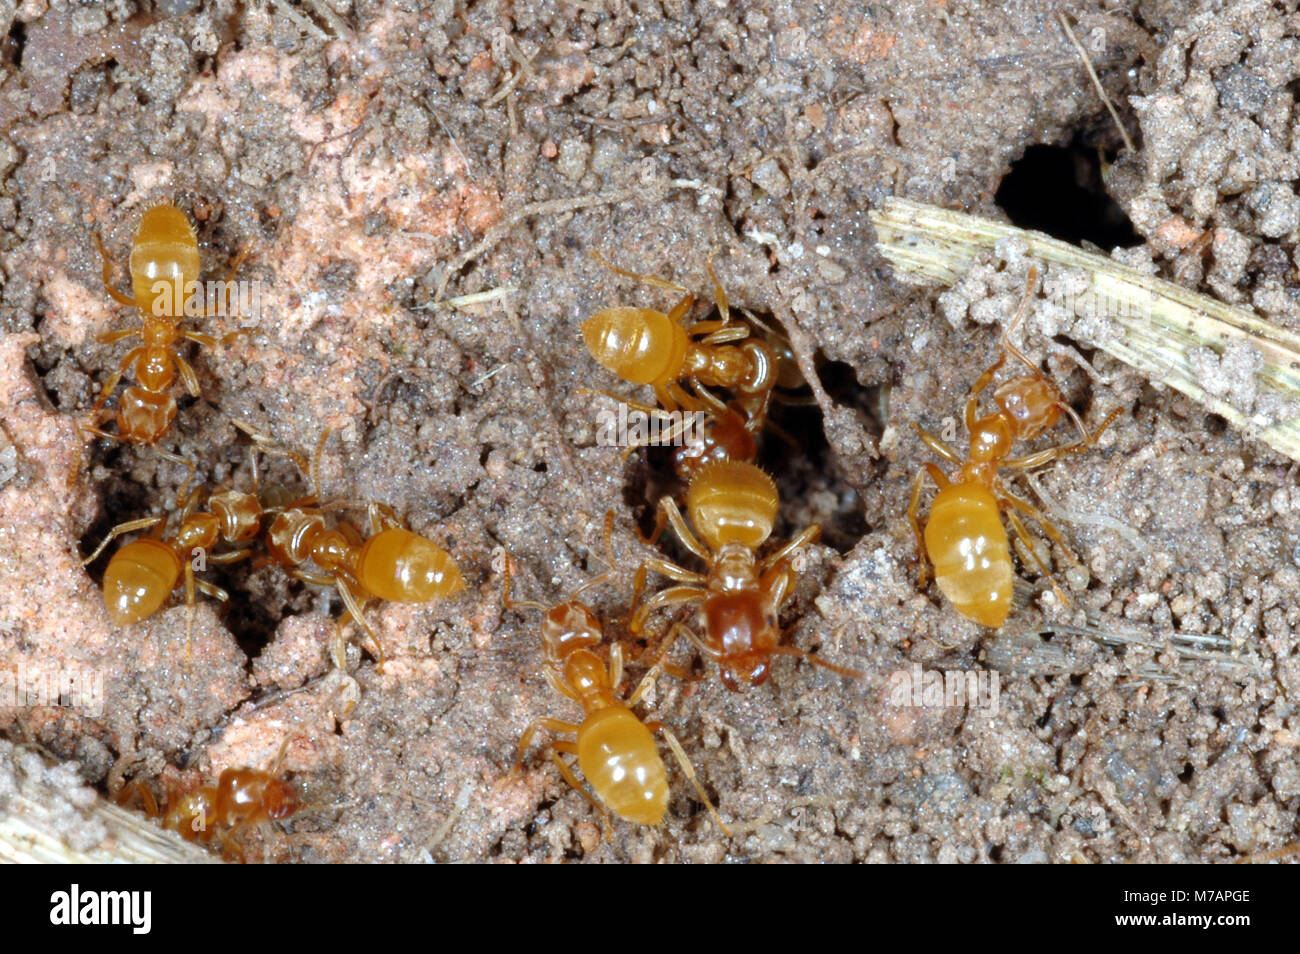 Yellow Meadow Ant  (Lasius flavus) Stock Photo